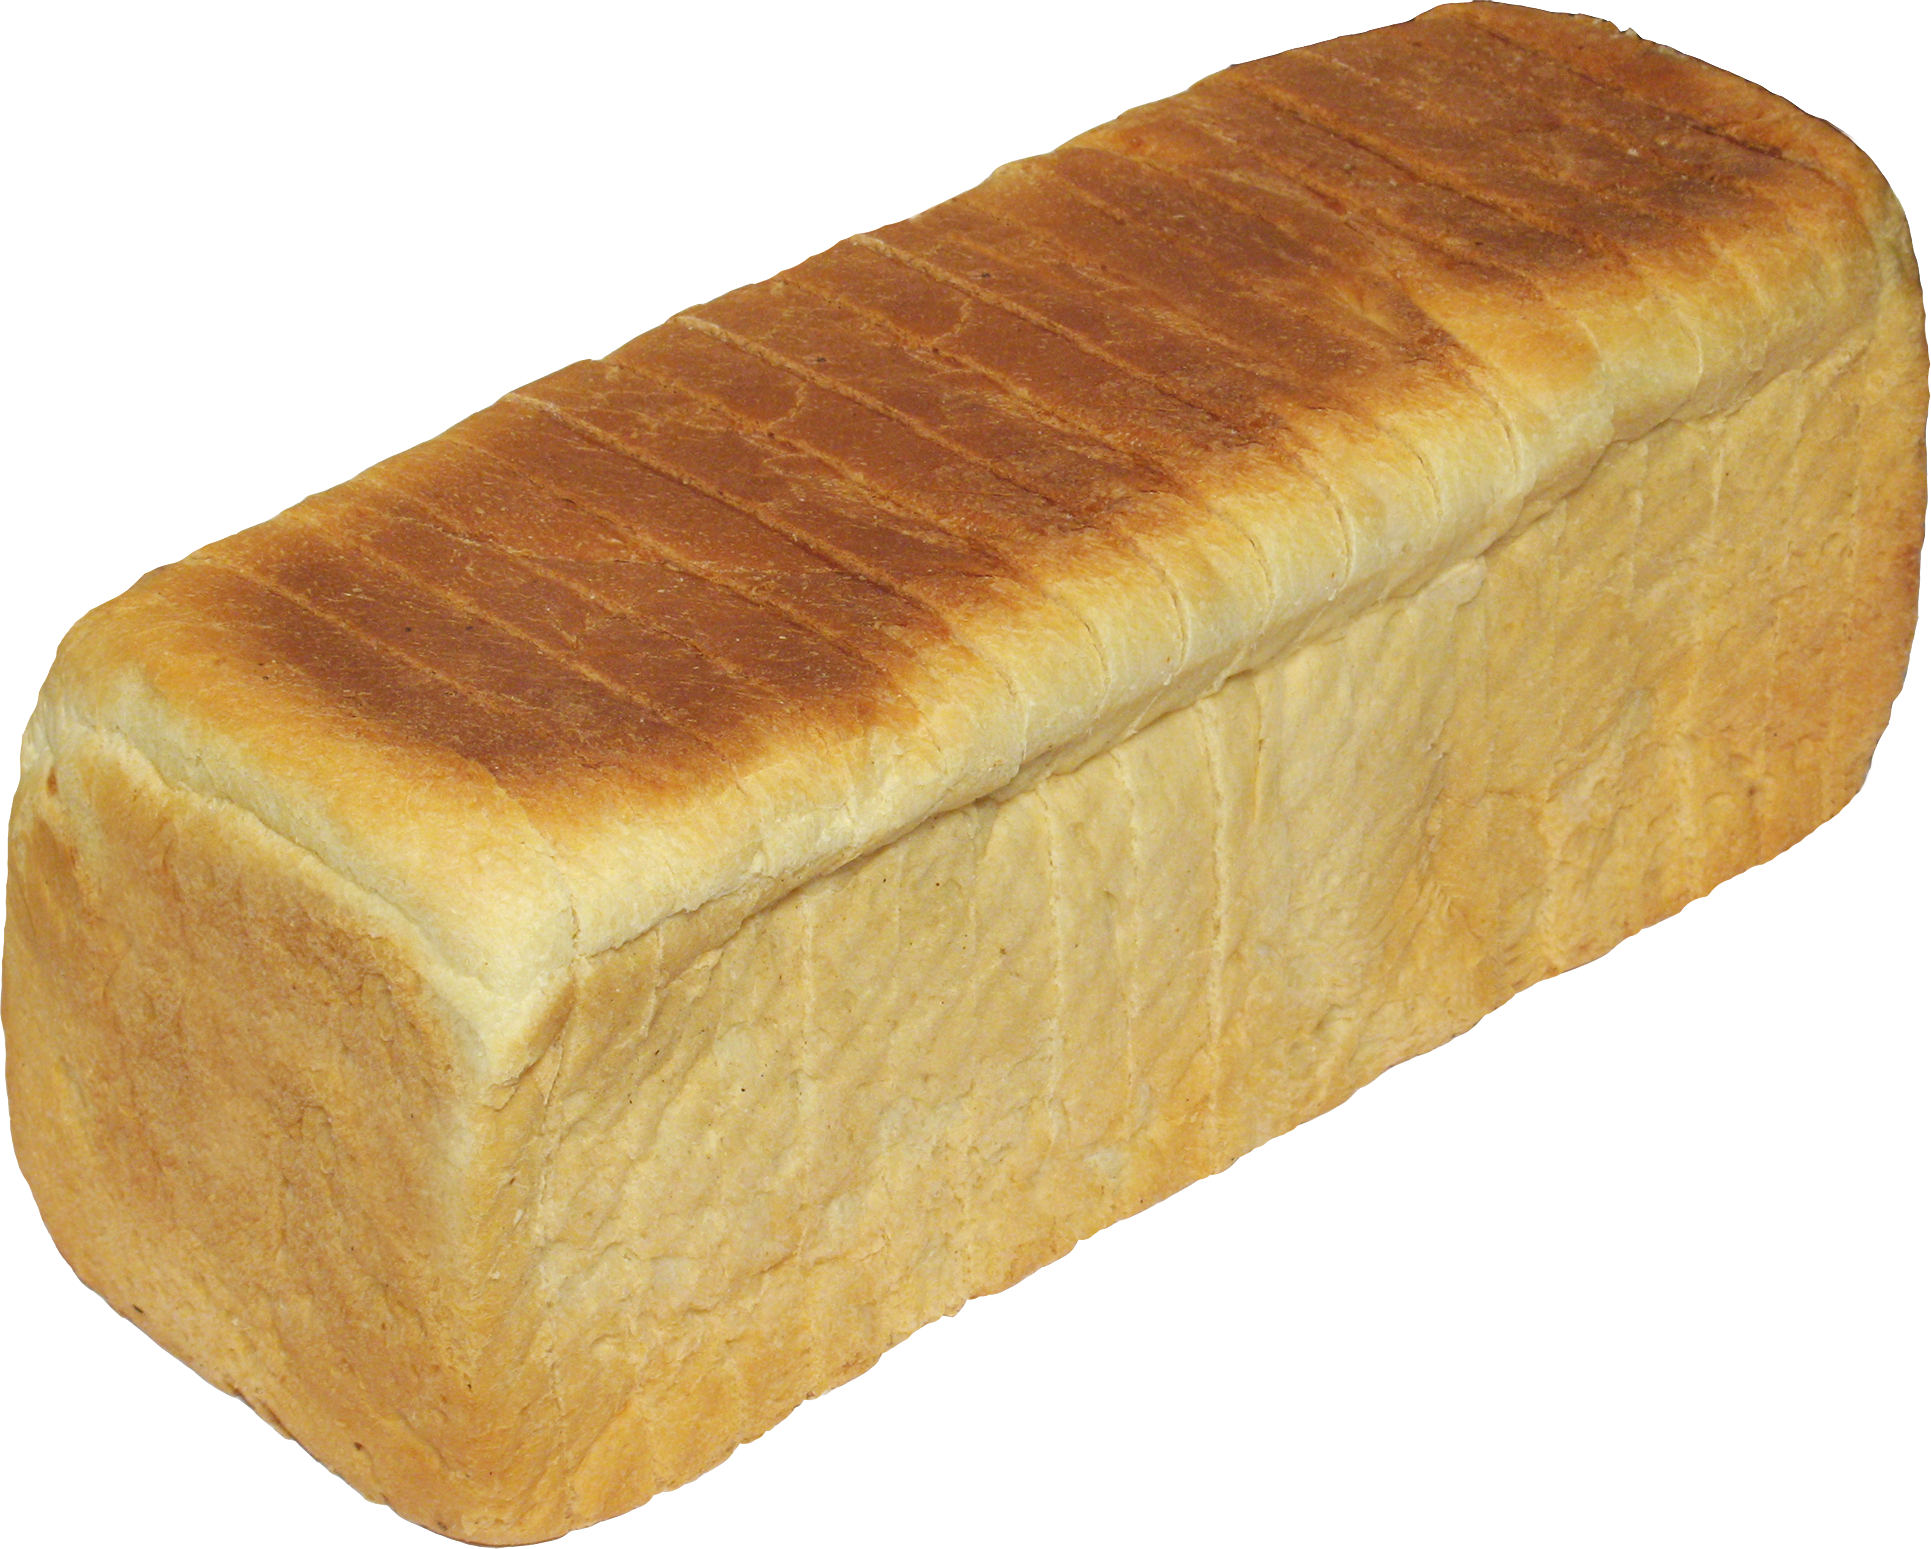 ขนมปังงา